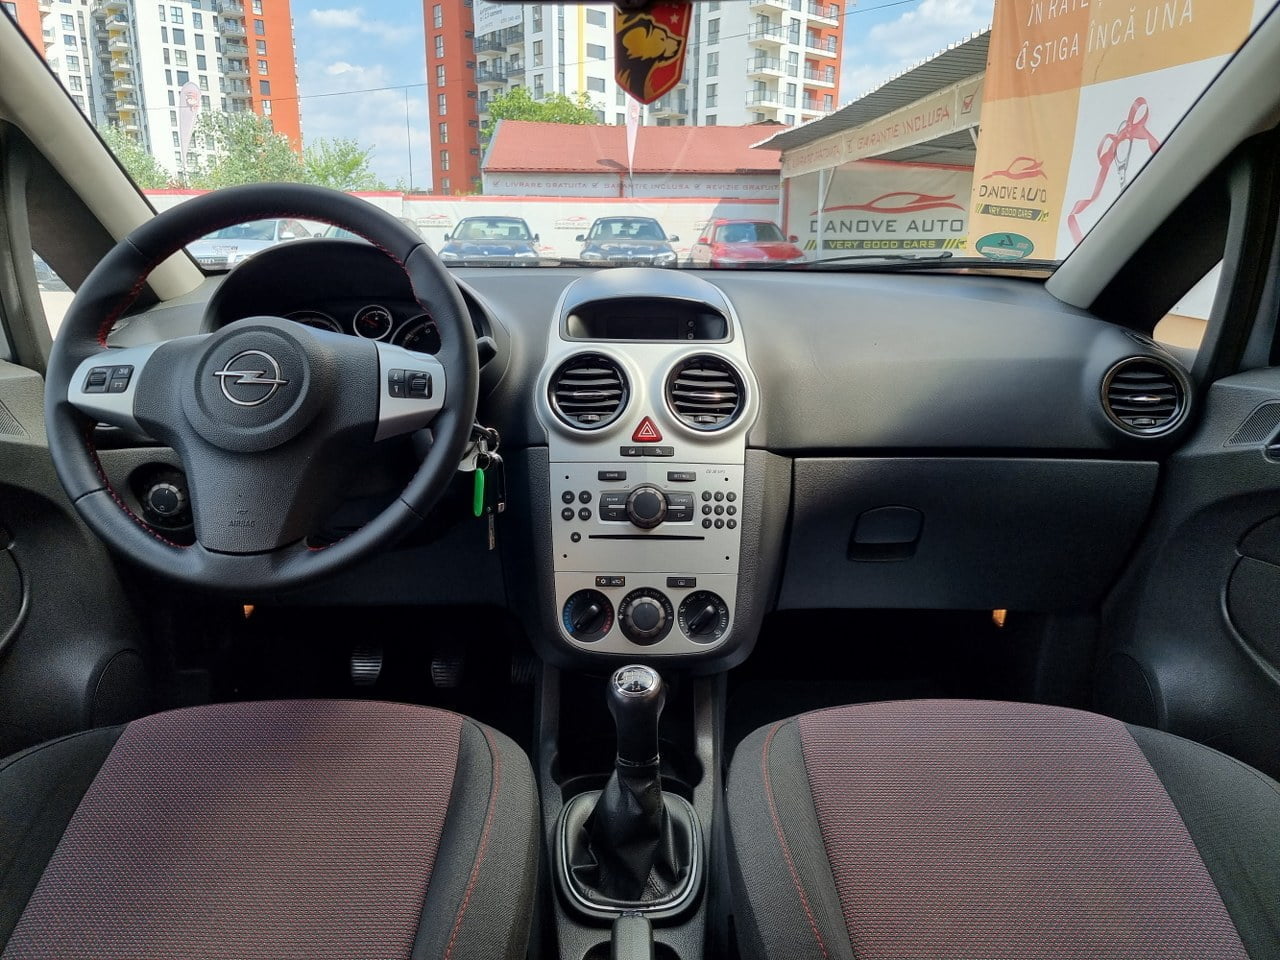 Opel Corsa 1.4 Benzină in RATE FIXE, Livrare GRATUITA, 12 Luni GARANTIE, Pret 4999€ full